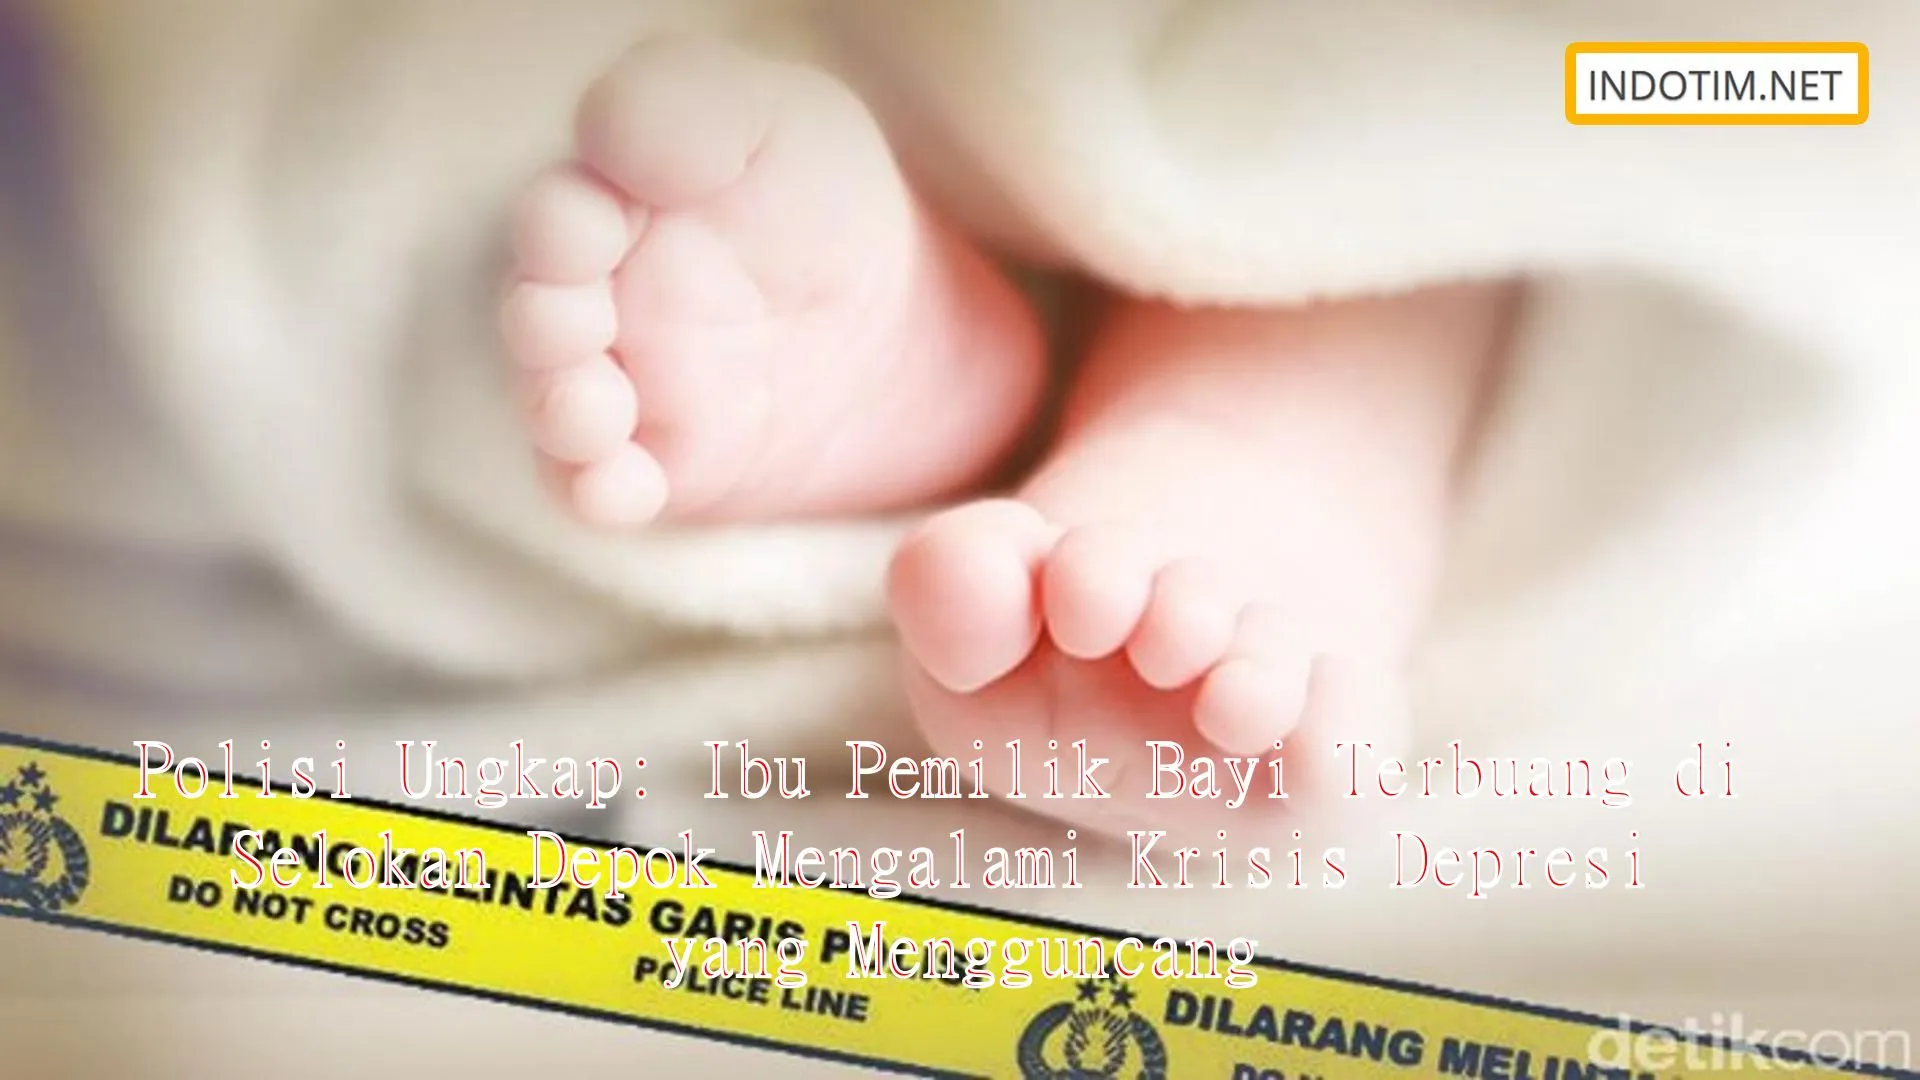 Polisi Ungkap: Ibu Pemilik Bayi Terbuang di Selokan Depok Mengalami Krisis Depresi yang Mengguncang